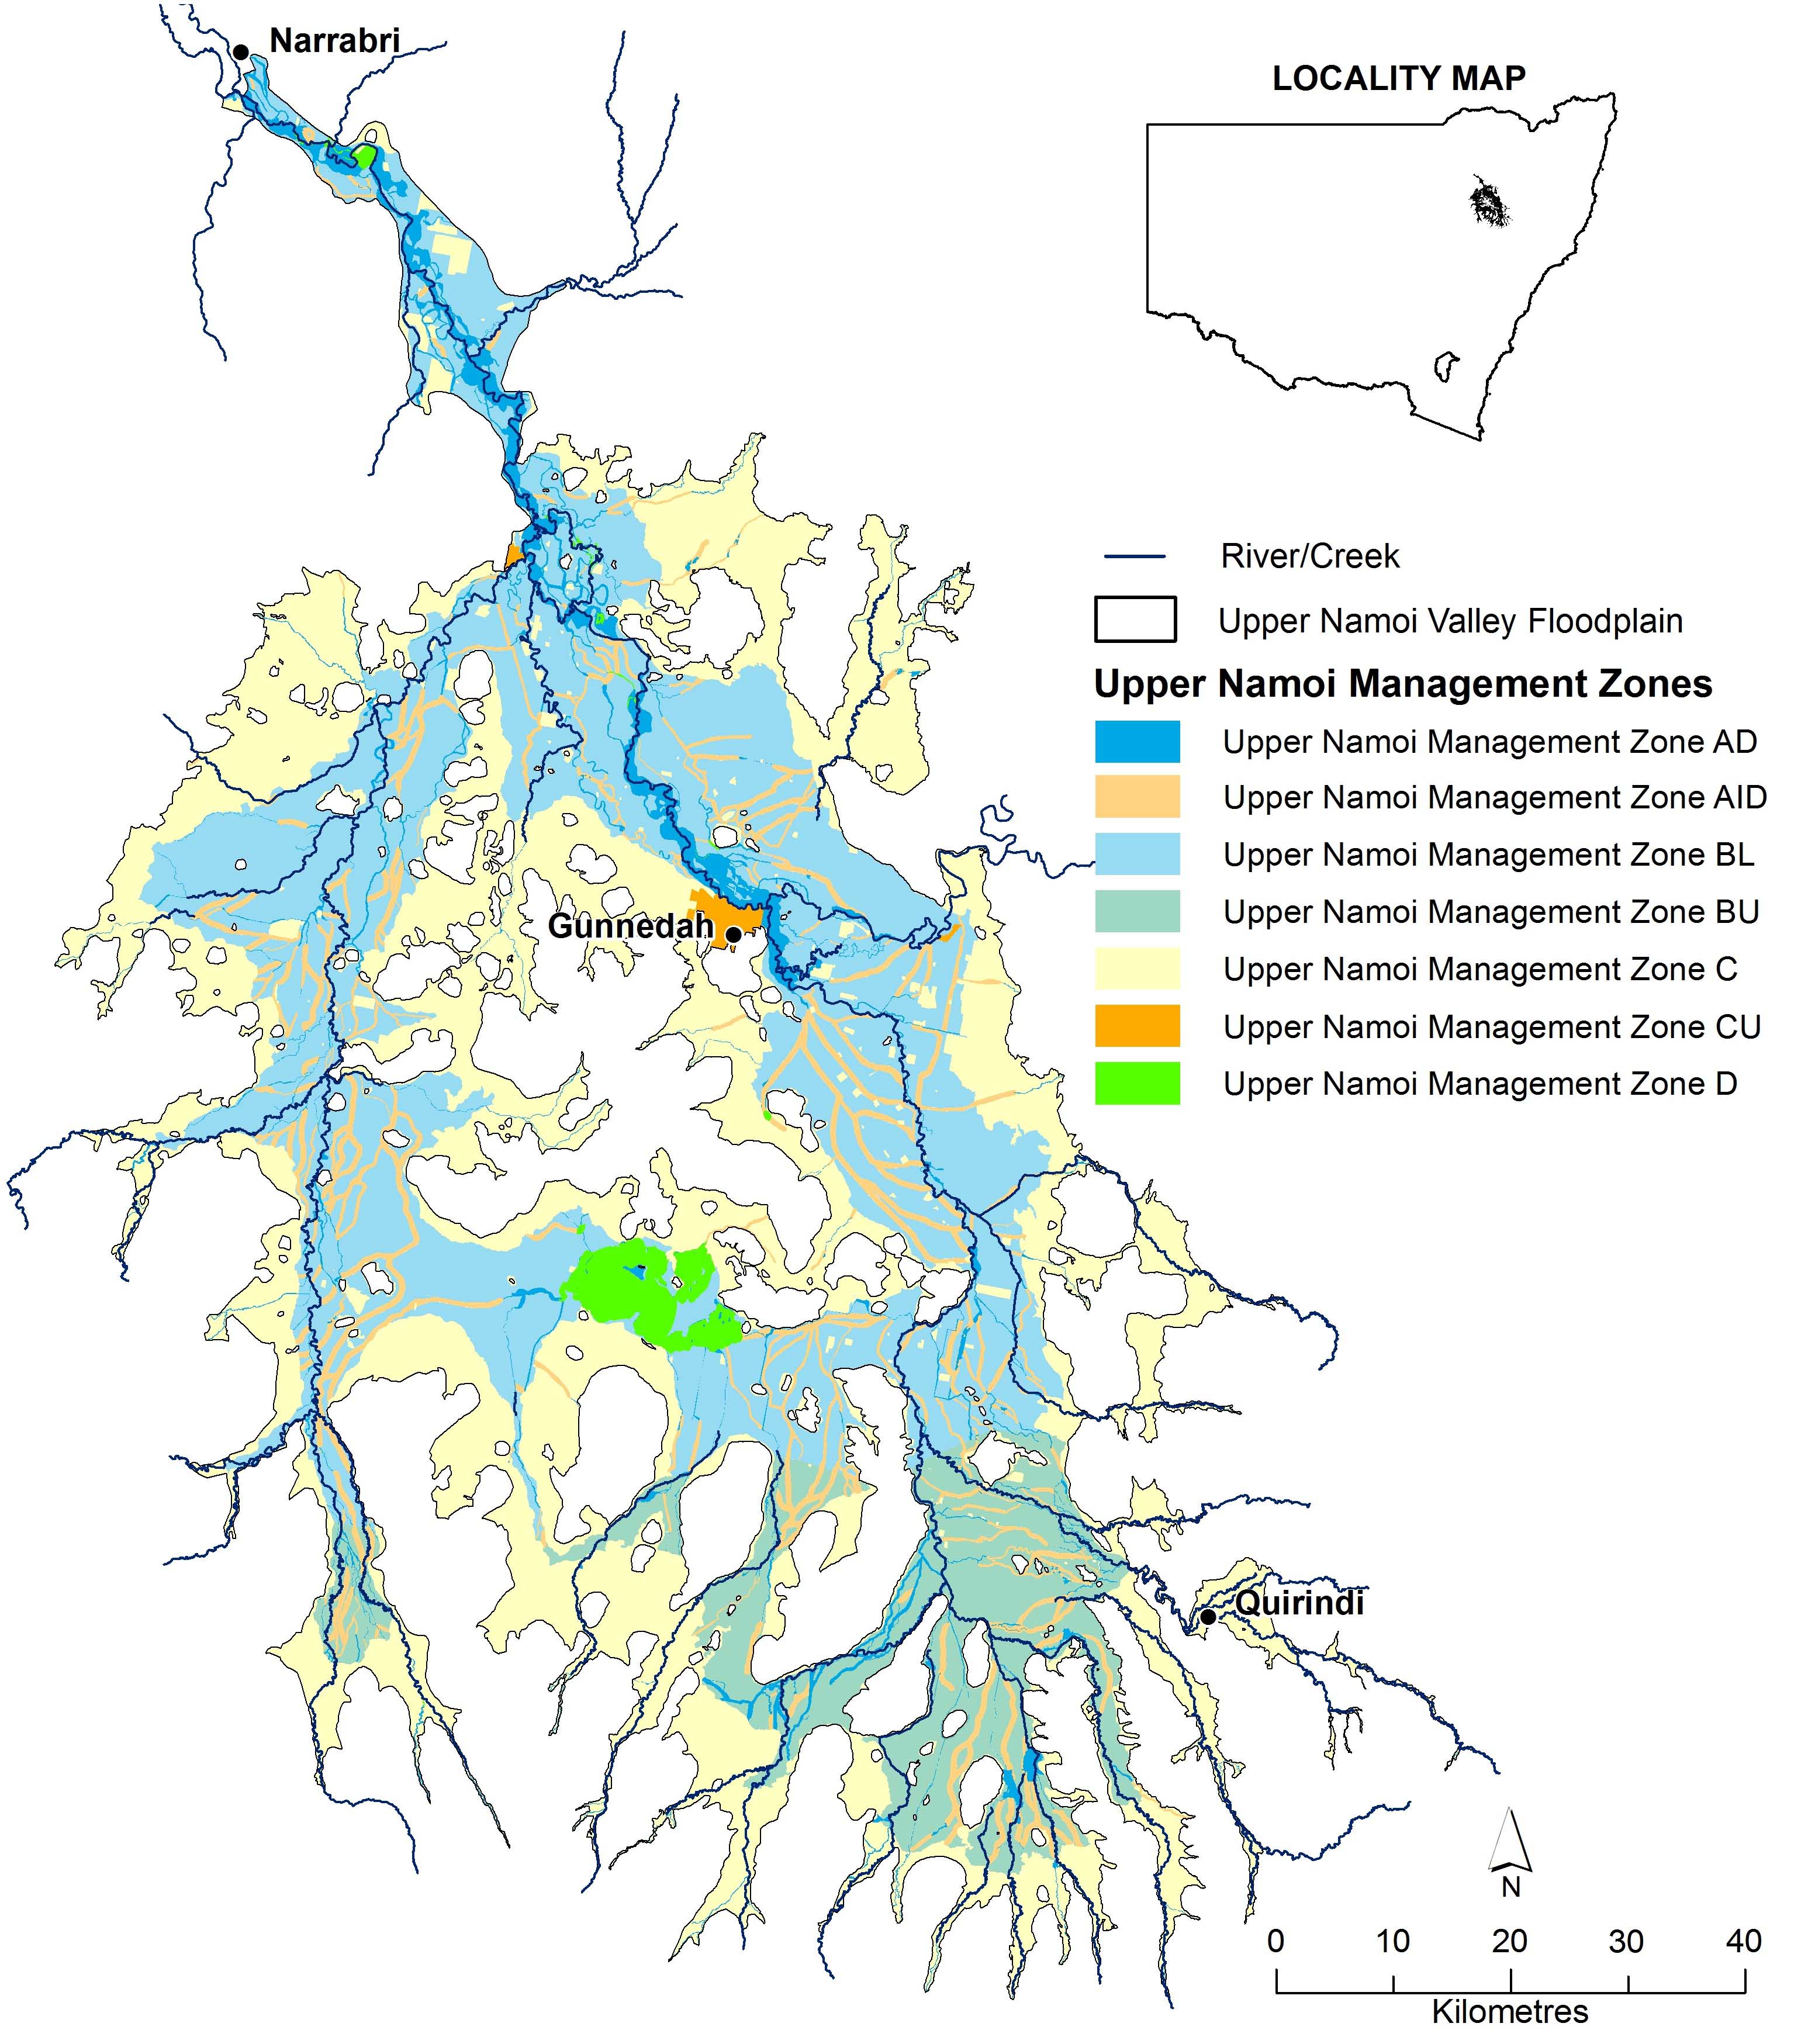 Floodplain Management Plan for the Upper Namoi Valley Floodplain